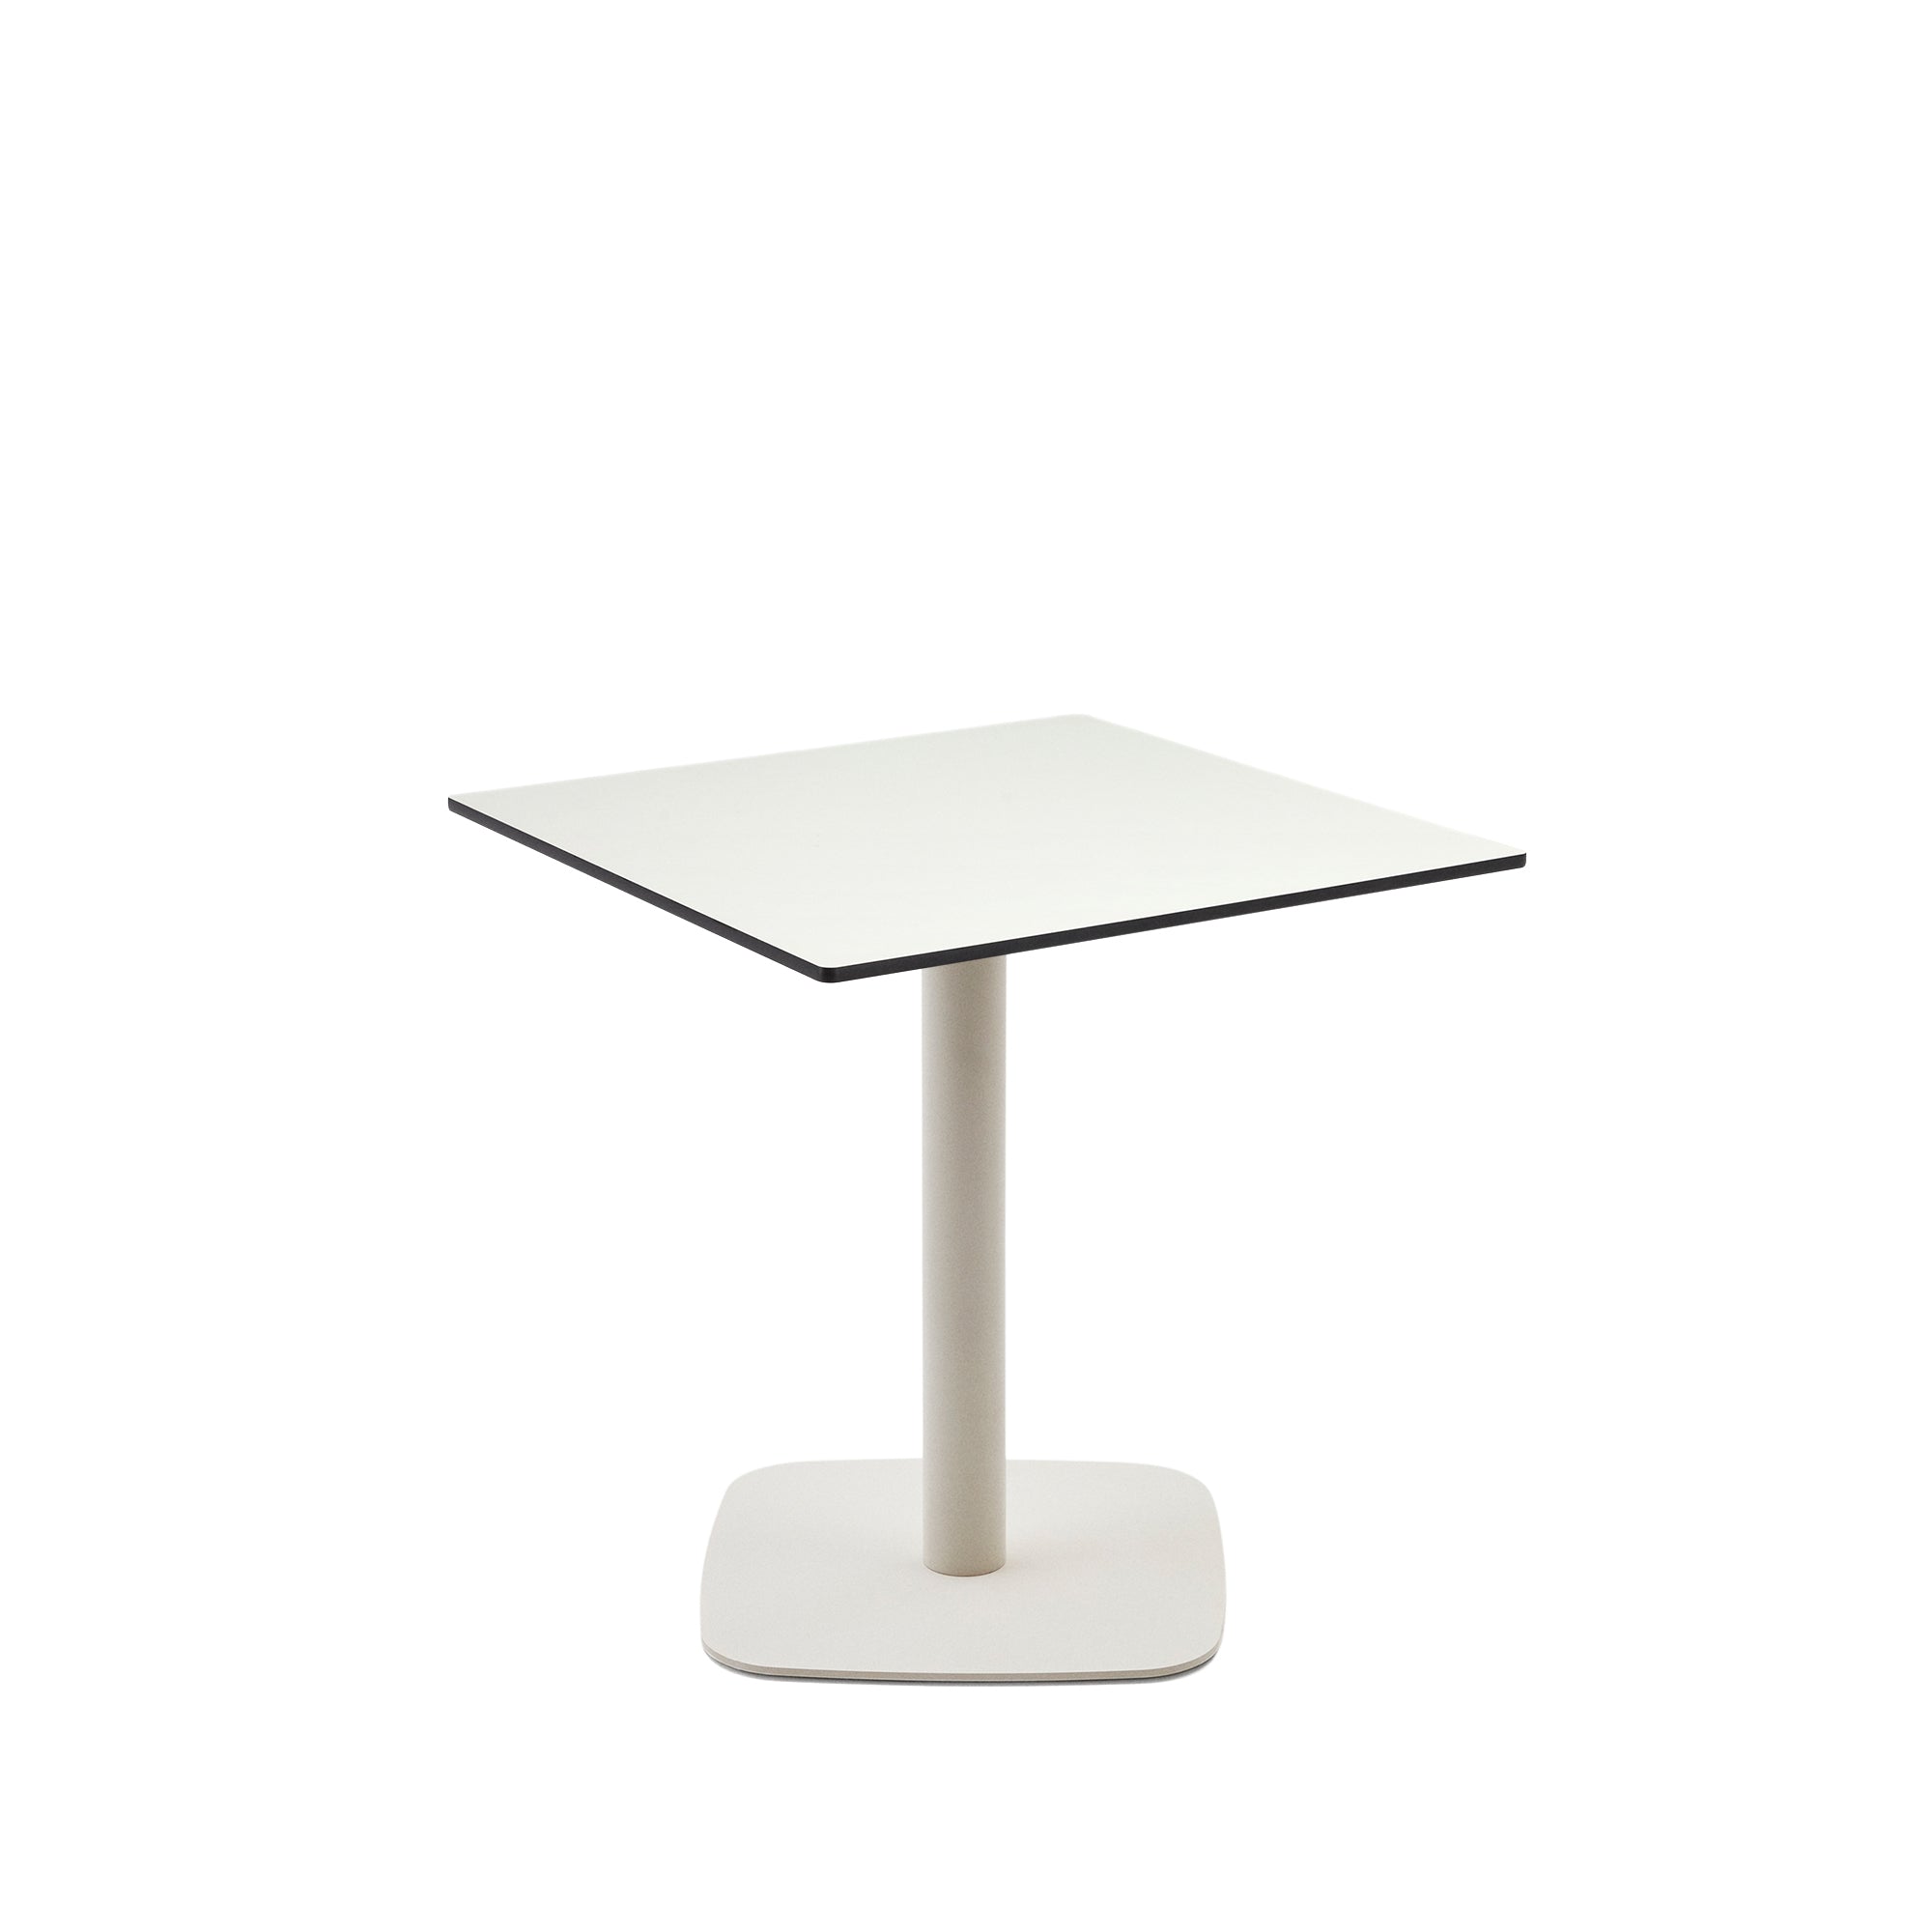 Dina kültéri asztal fehér színben, fehérre festett fém lábbal, 68 x 68 x 70 cm